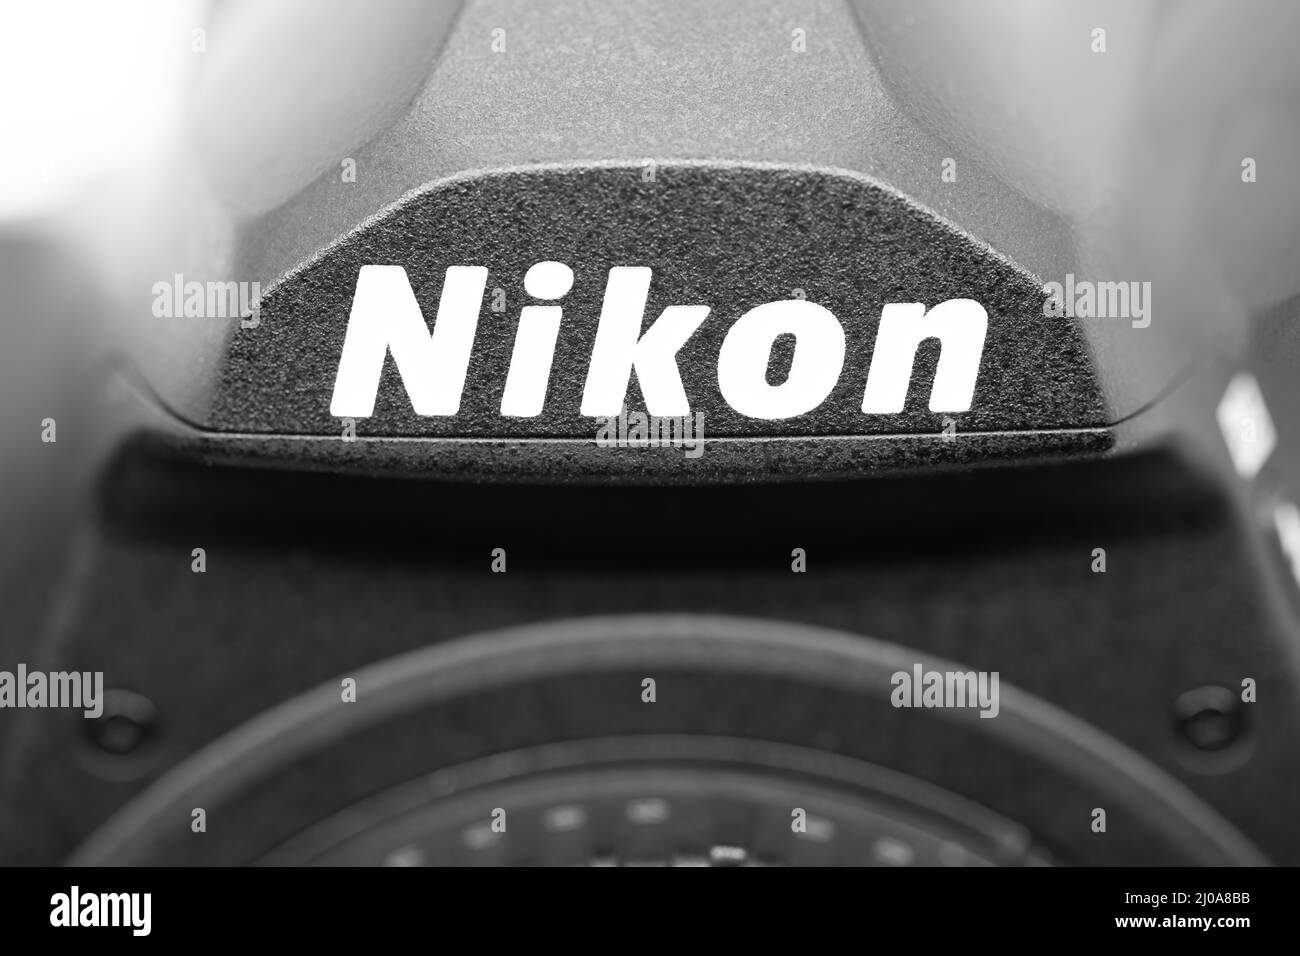 Puerto Vallarta, Mexiko - März 17 2022: Logo Der Marke Nikon Auf Dem Kameragehäuse. Nikon ist ein japanischer multinationaler Konzern, der sich auf Optik und Bild spezialisiert hat Stockfoto